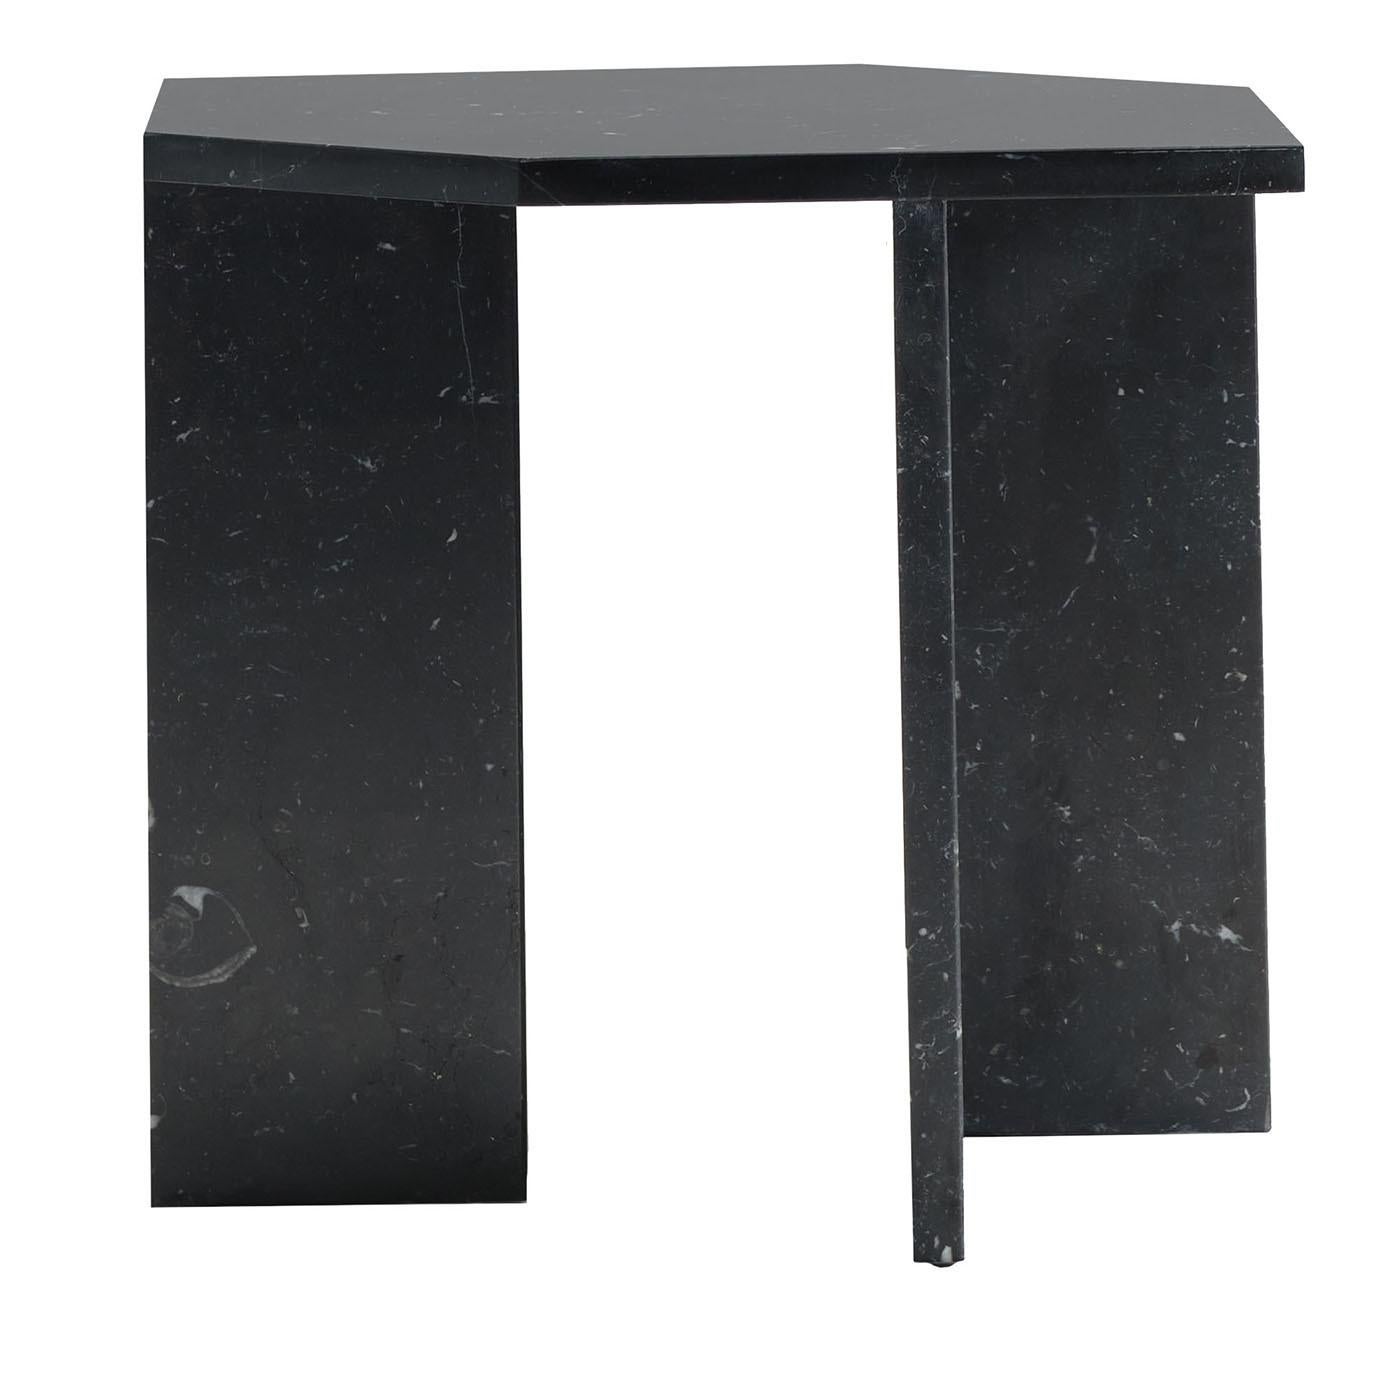 Des plaques de marbre Marquinia noir brillant sont savamment assemblées pour créer cette table basse sculpturale d'inspiration géométrique incomparable. Posé sur des pieds anguleux rappelant d'une certaine manière les profils des cubes, le sommet